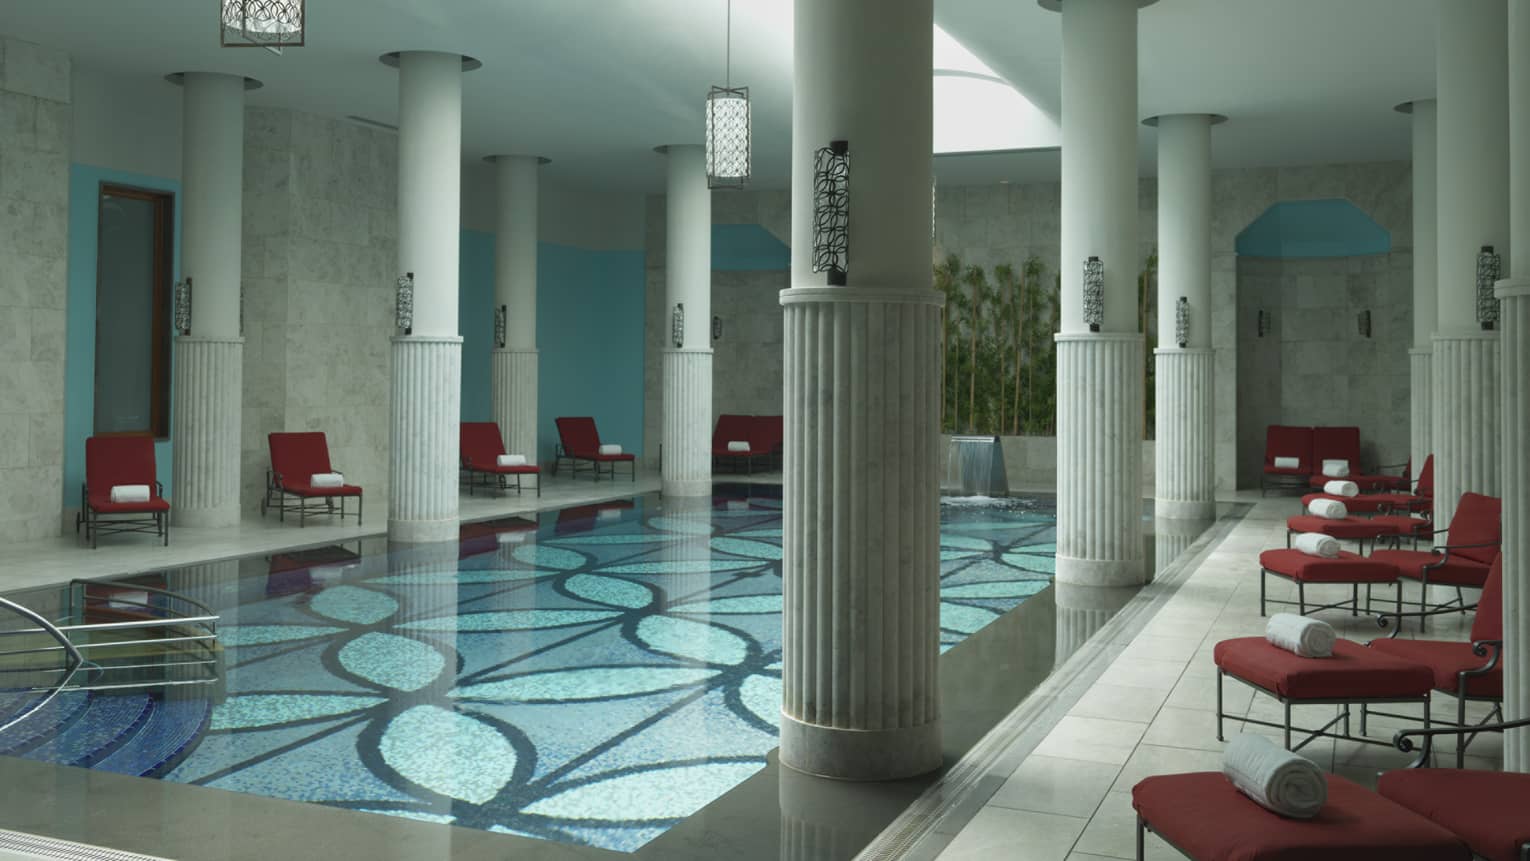 Tall white pillars around long indoor swimming pool